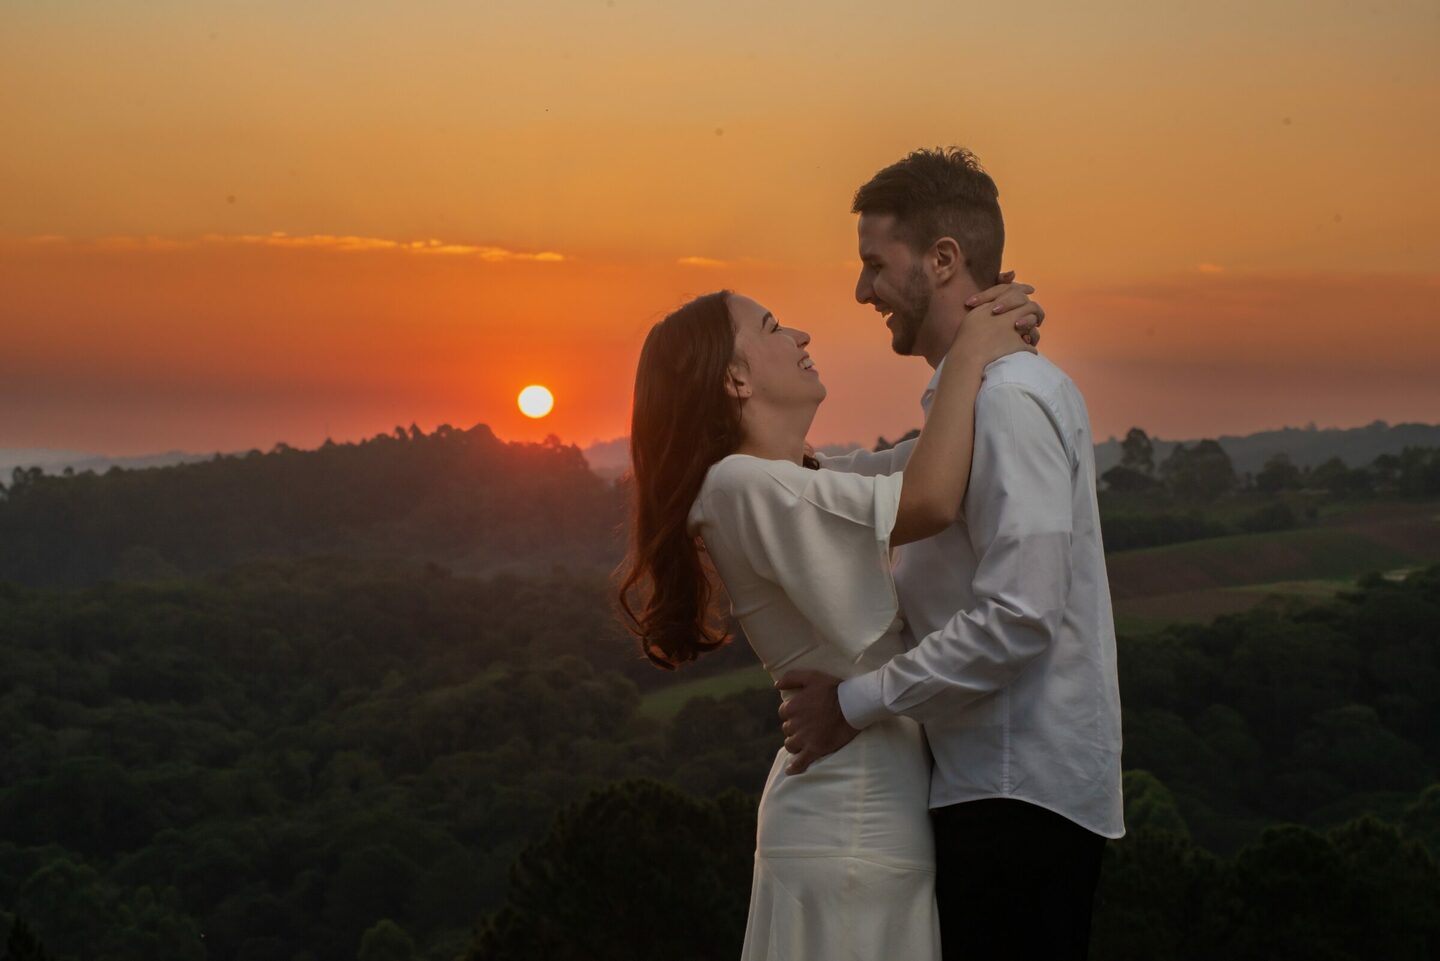 "Amor em foco: Fotos de casamento que transmitem felicidade"